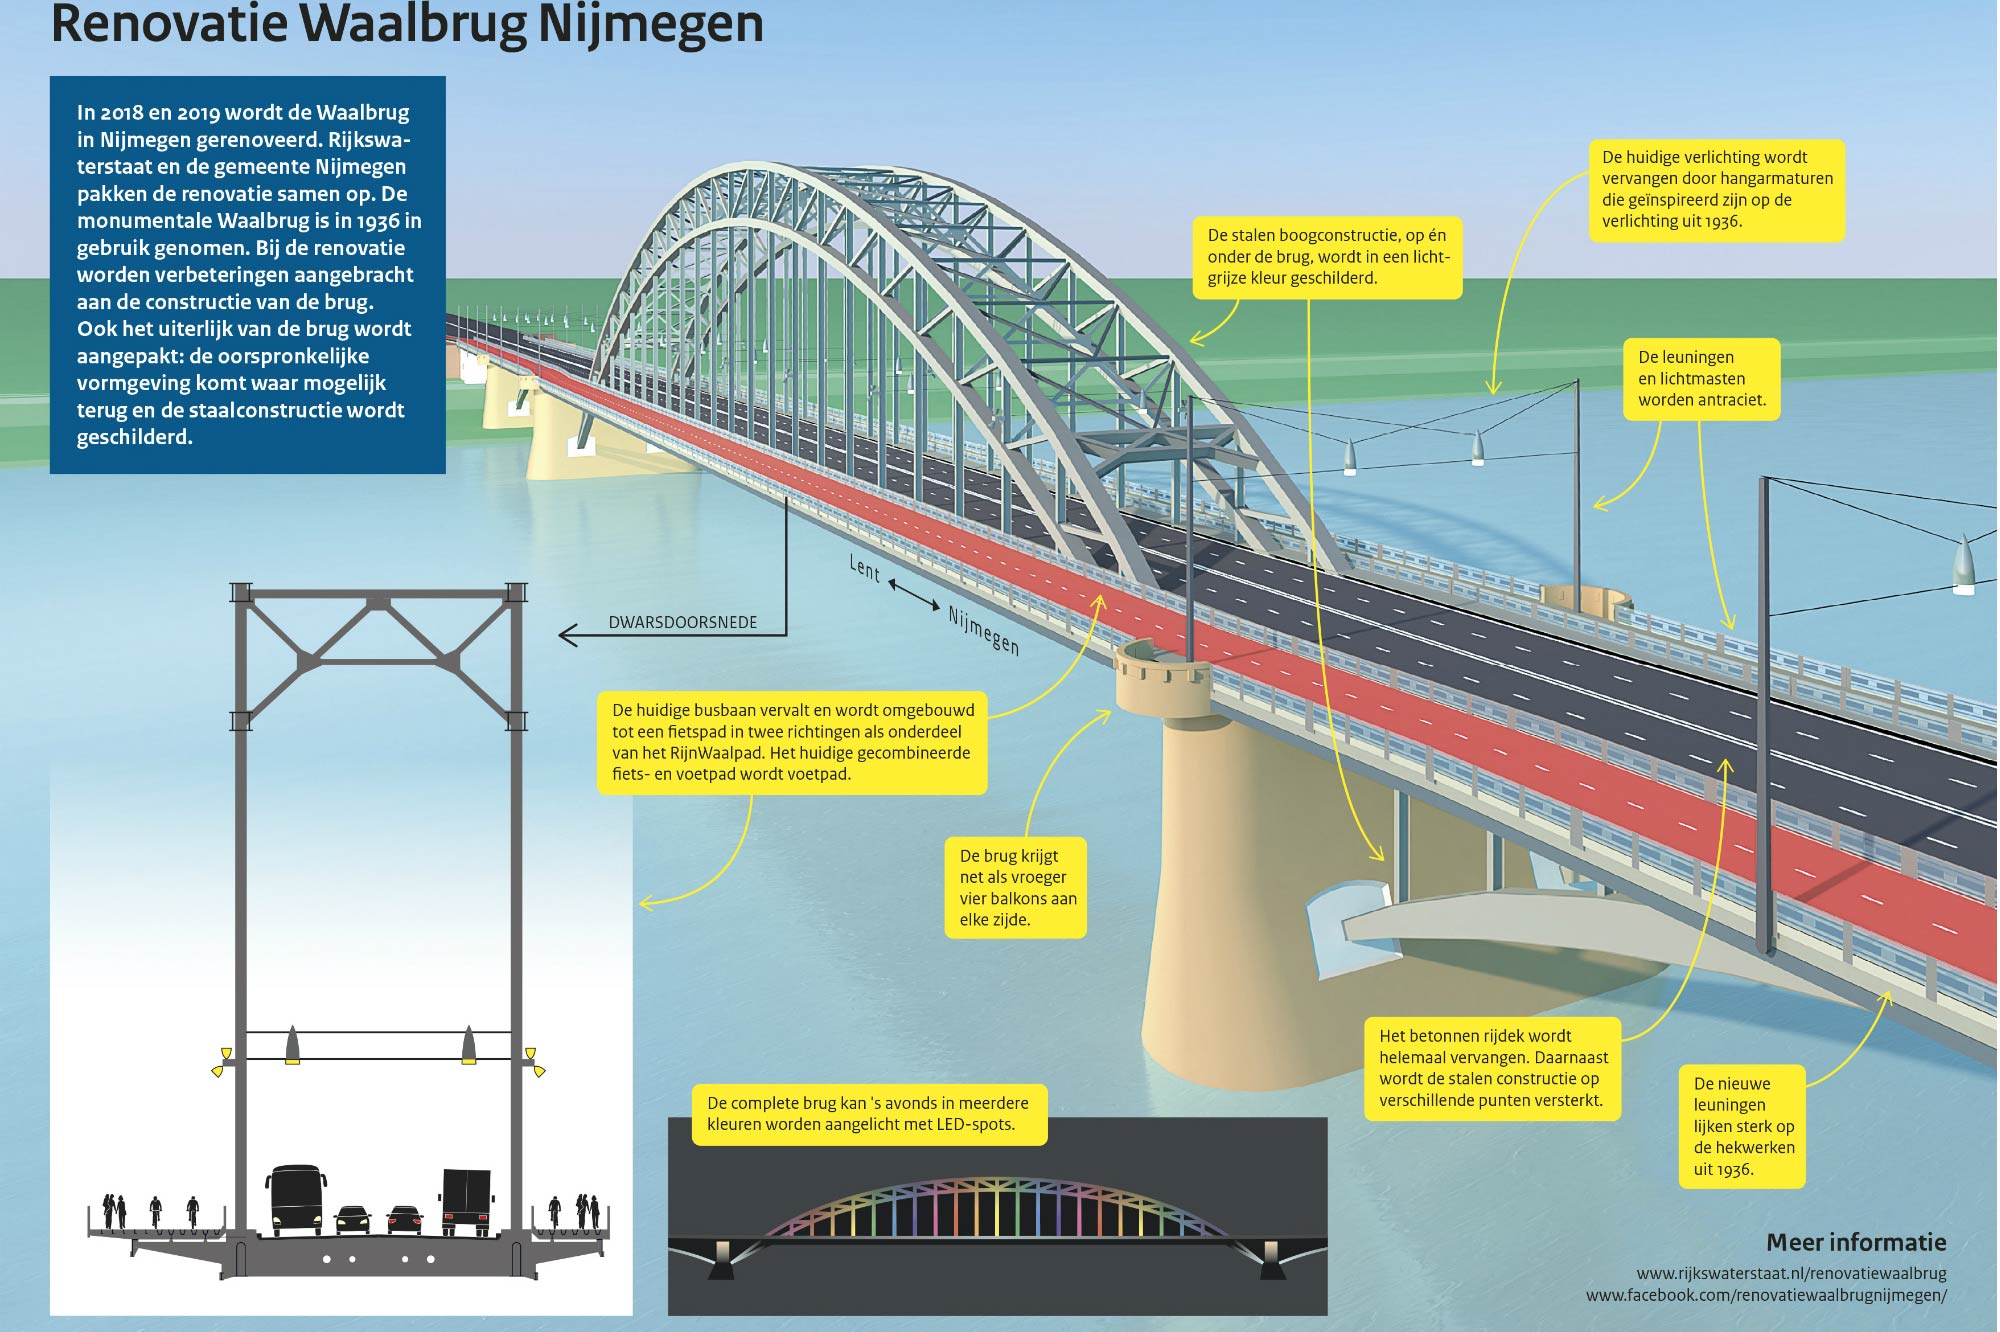 Nachtelijke afsluitingen Waalbrug Nijmegen van 6 tot 9 februari